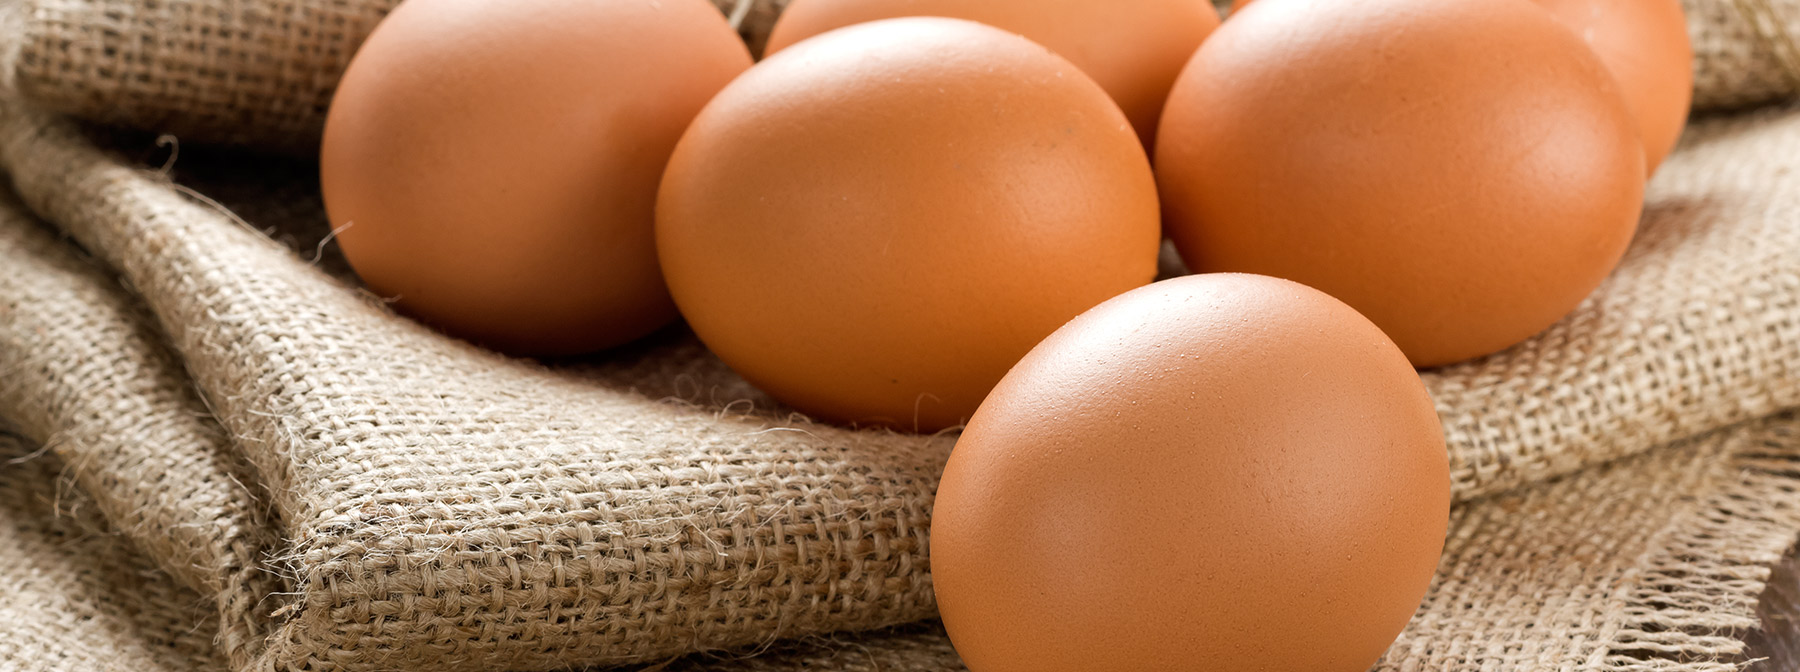 Θα αυξηθεί η χοληστερίνη μου αν τρώω αυγά;